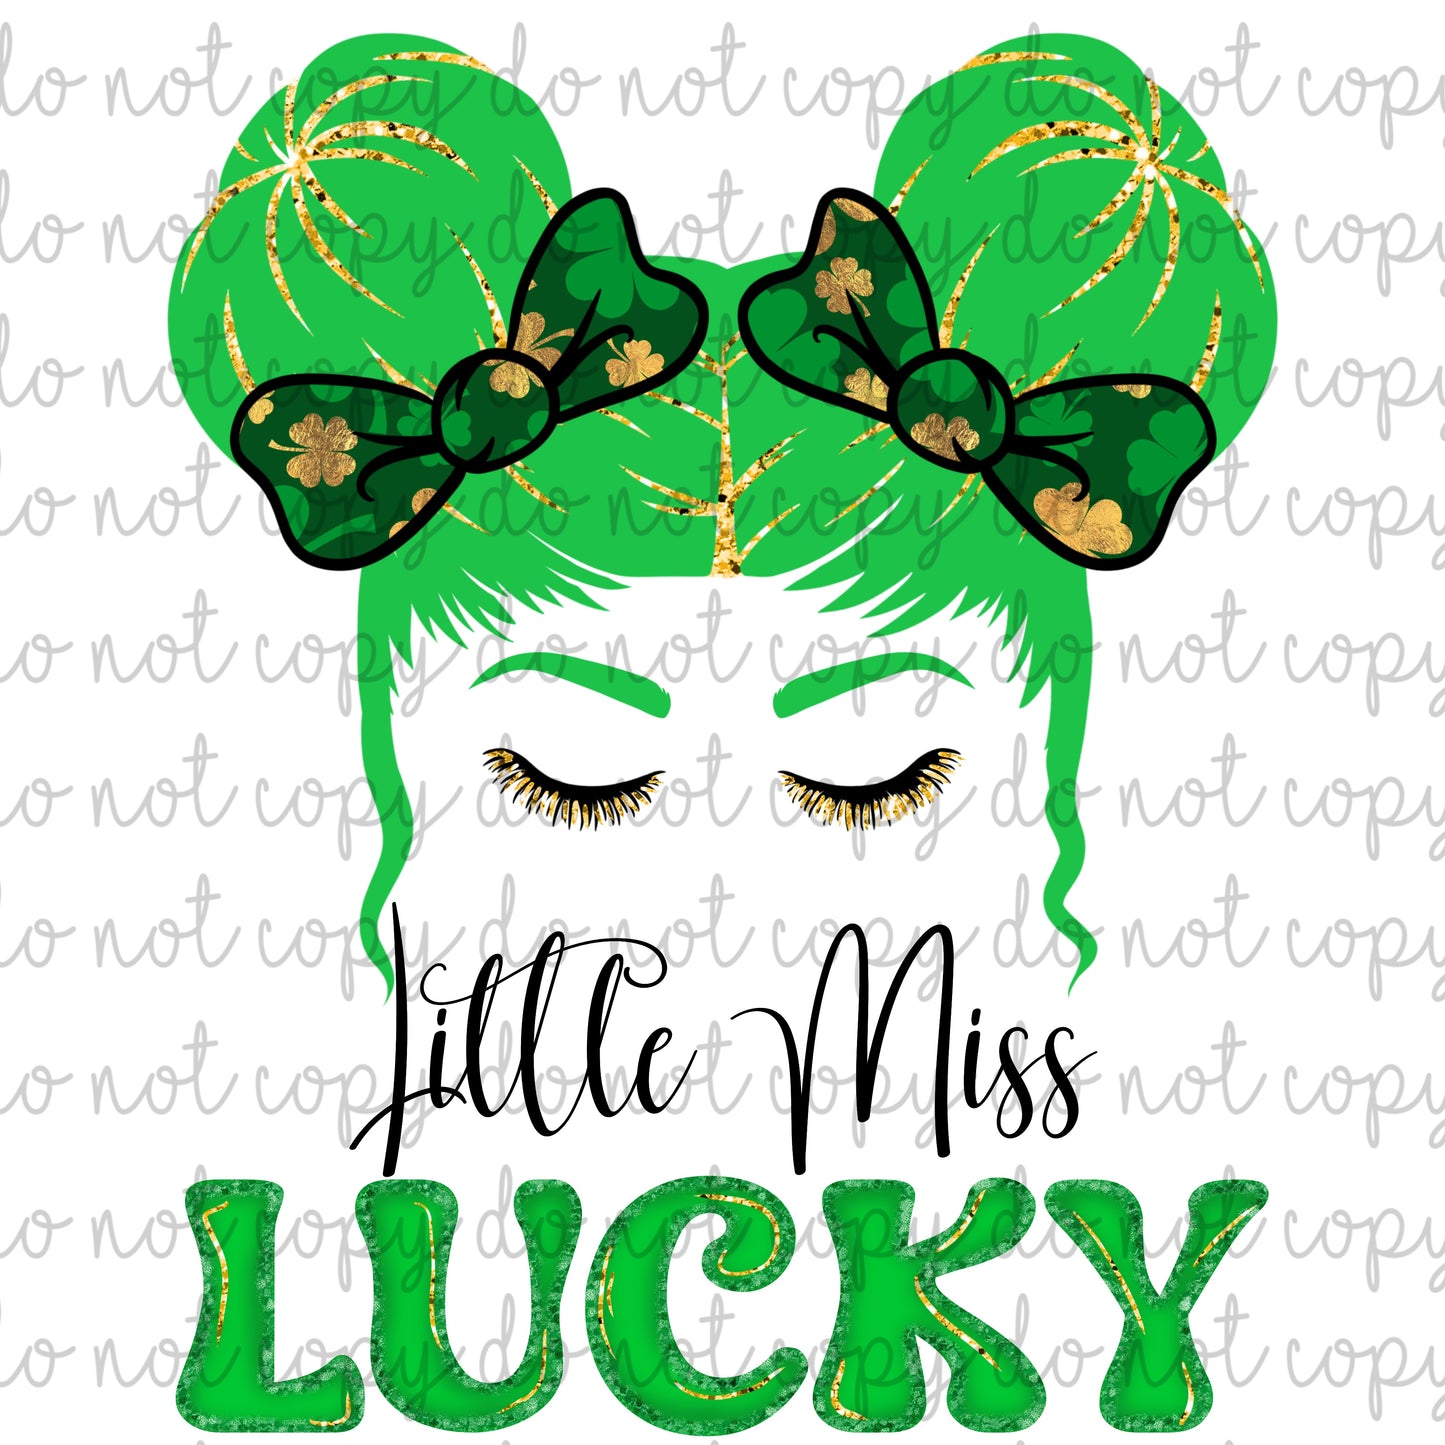 Little Miss Lucky